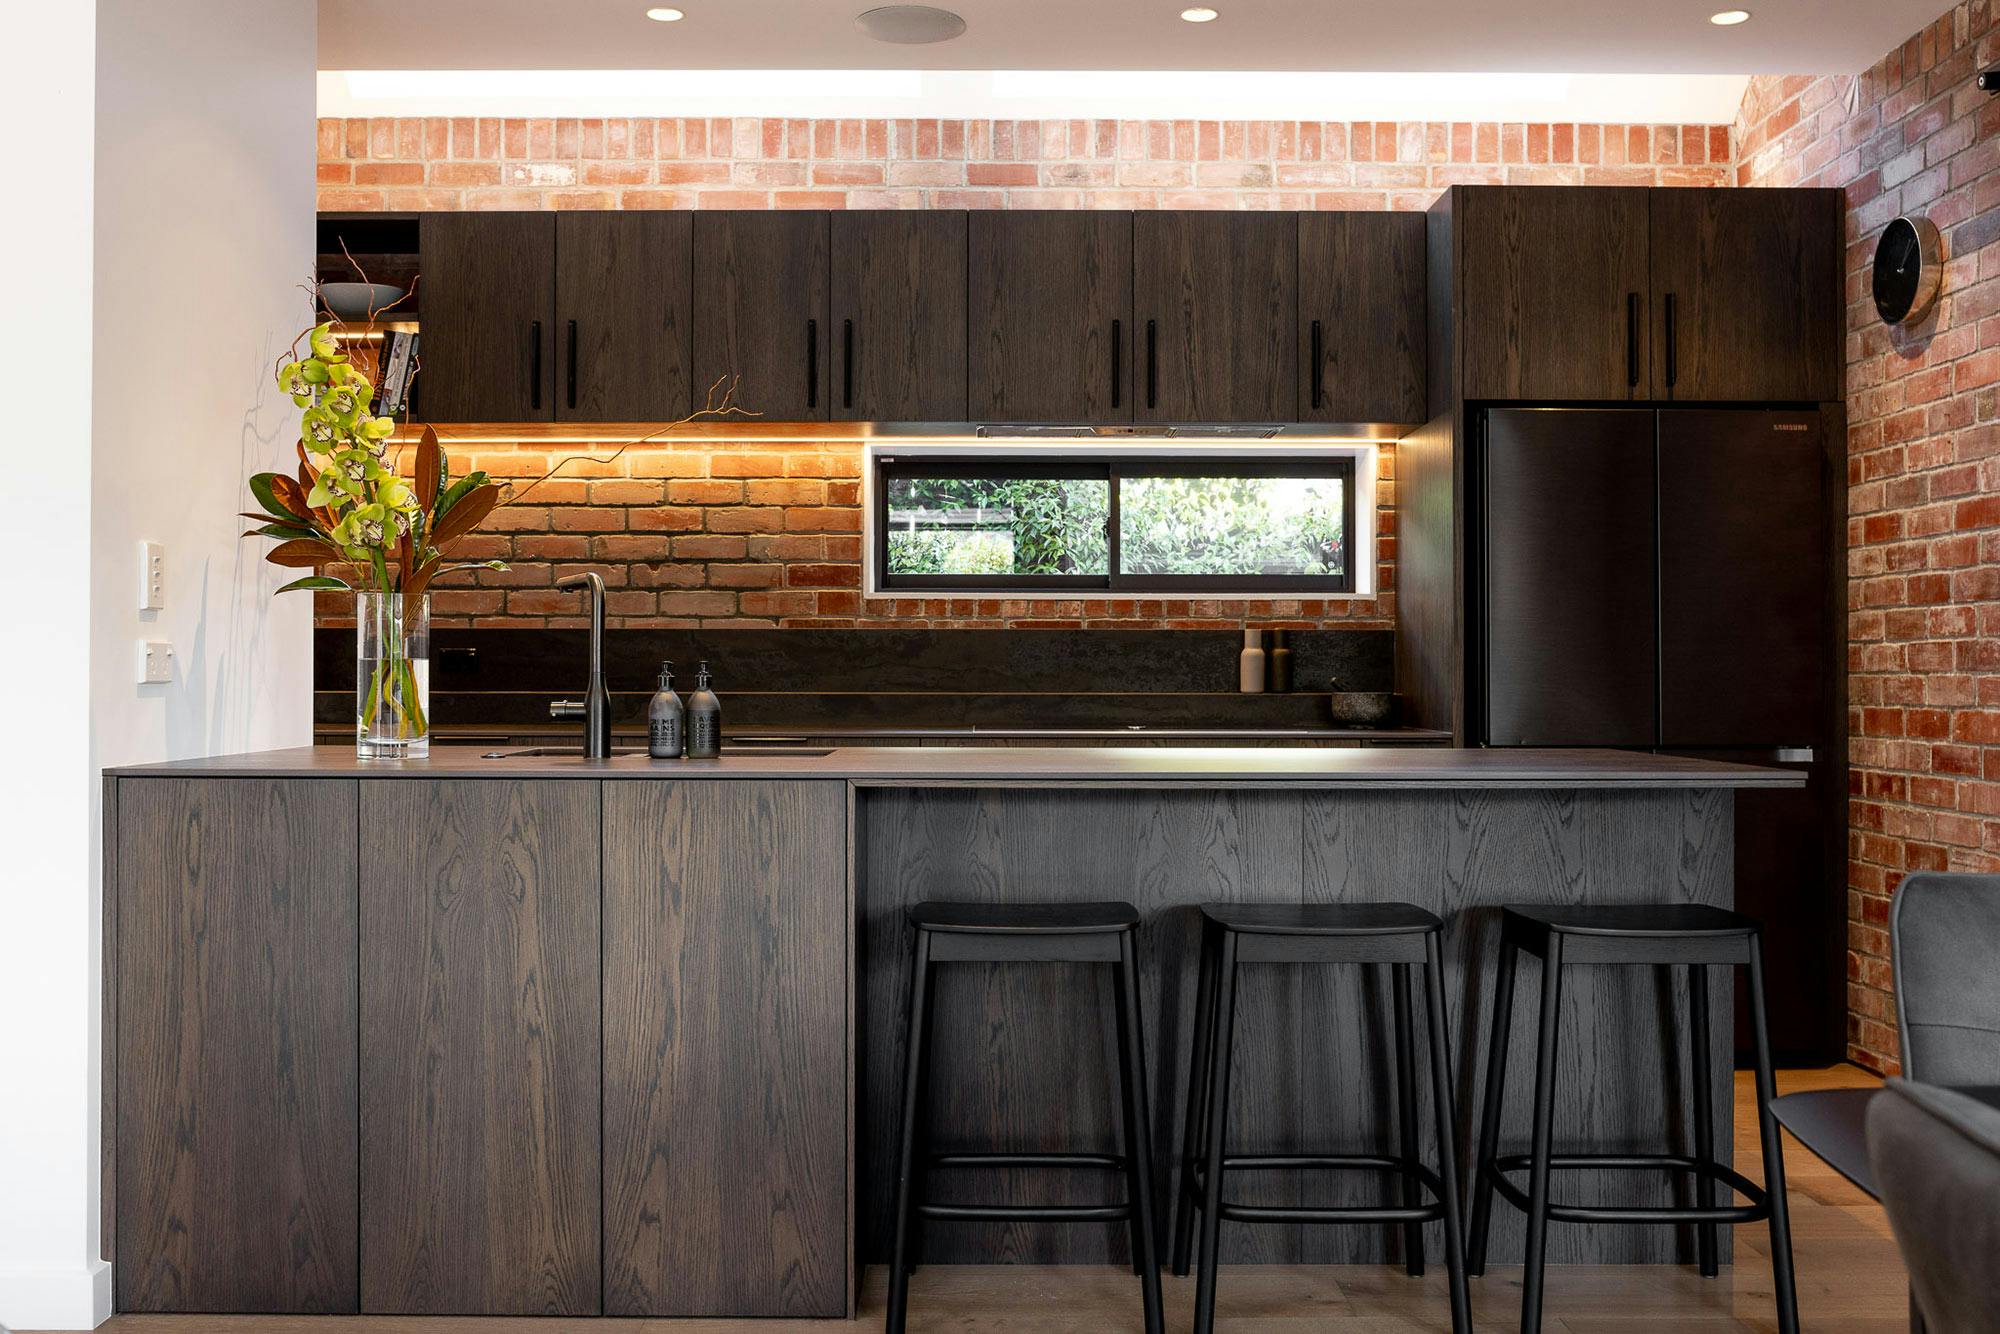 Bildnummer 39 des aktuellen Abschnitts von An open concept kitchen by MS2 Design Studio in a luxury South Beach condo von Cosentino Deutschland